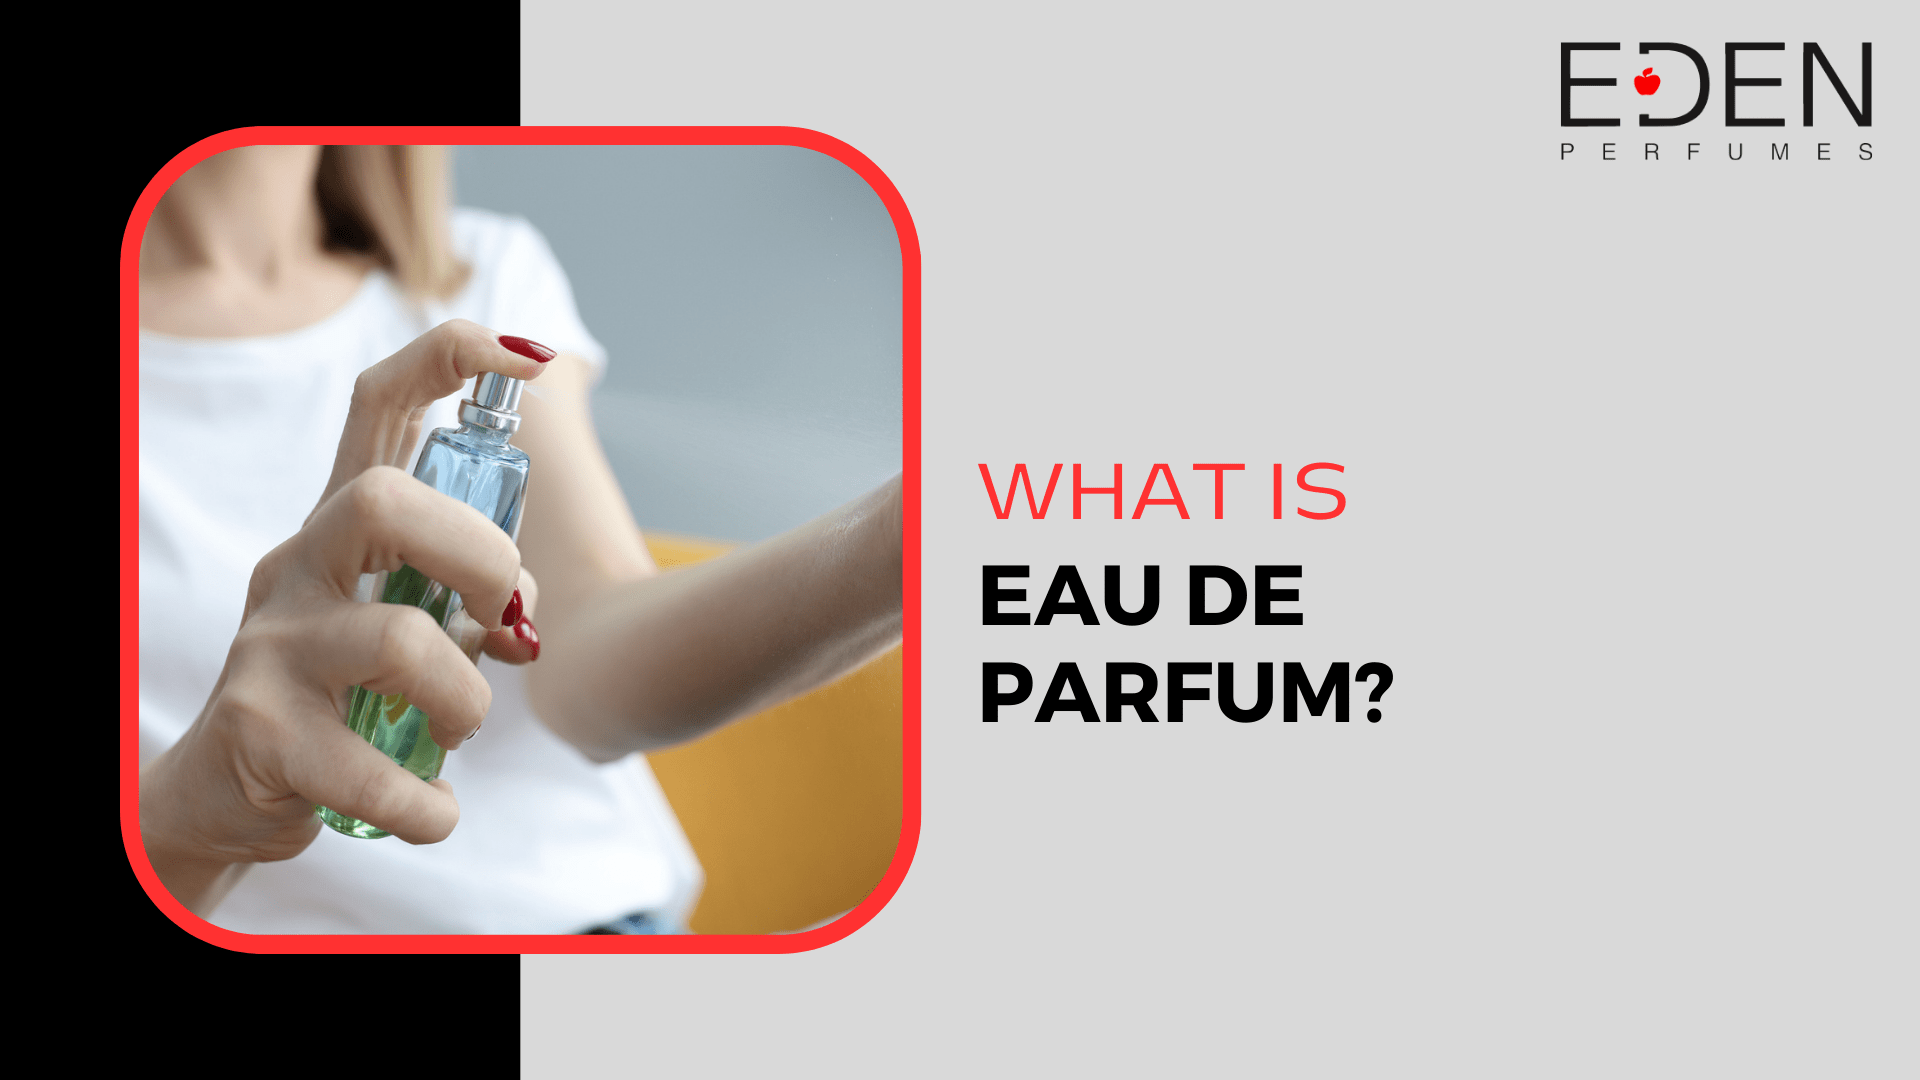 What is eau de parfum